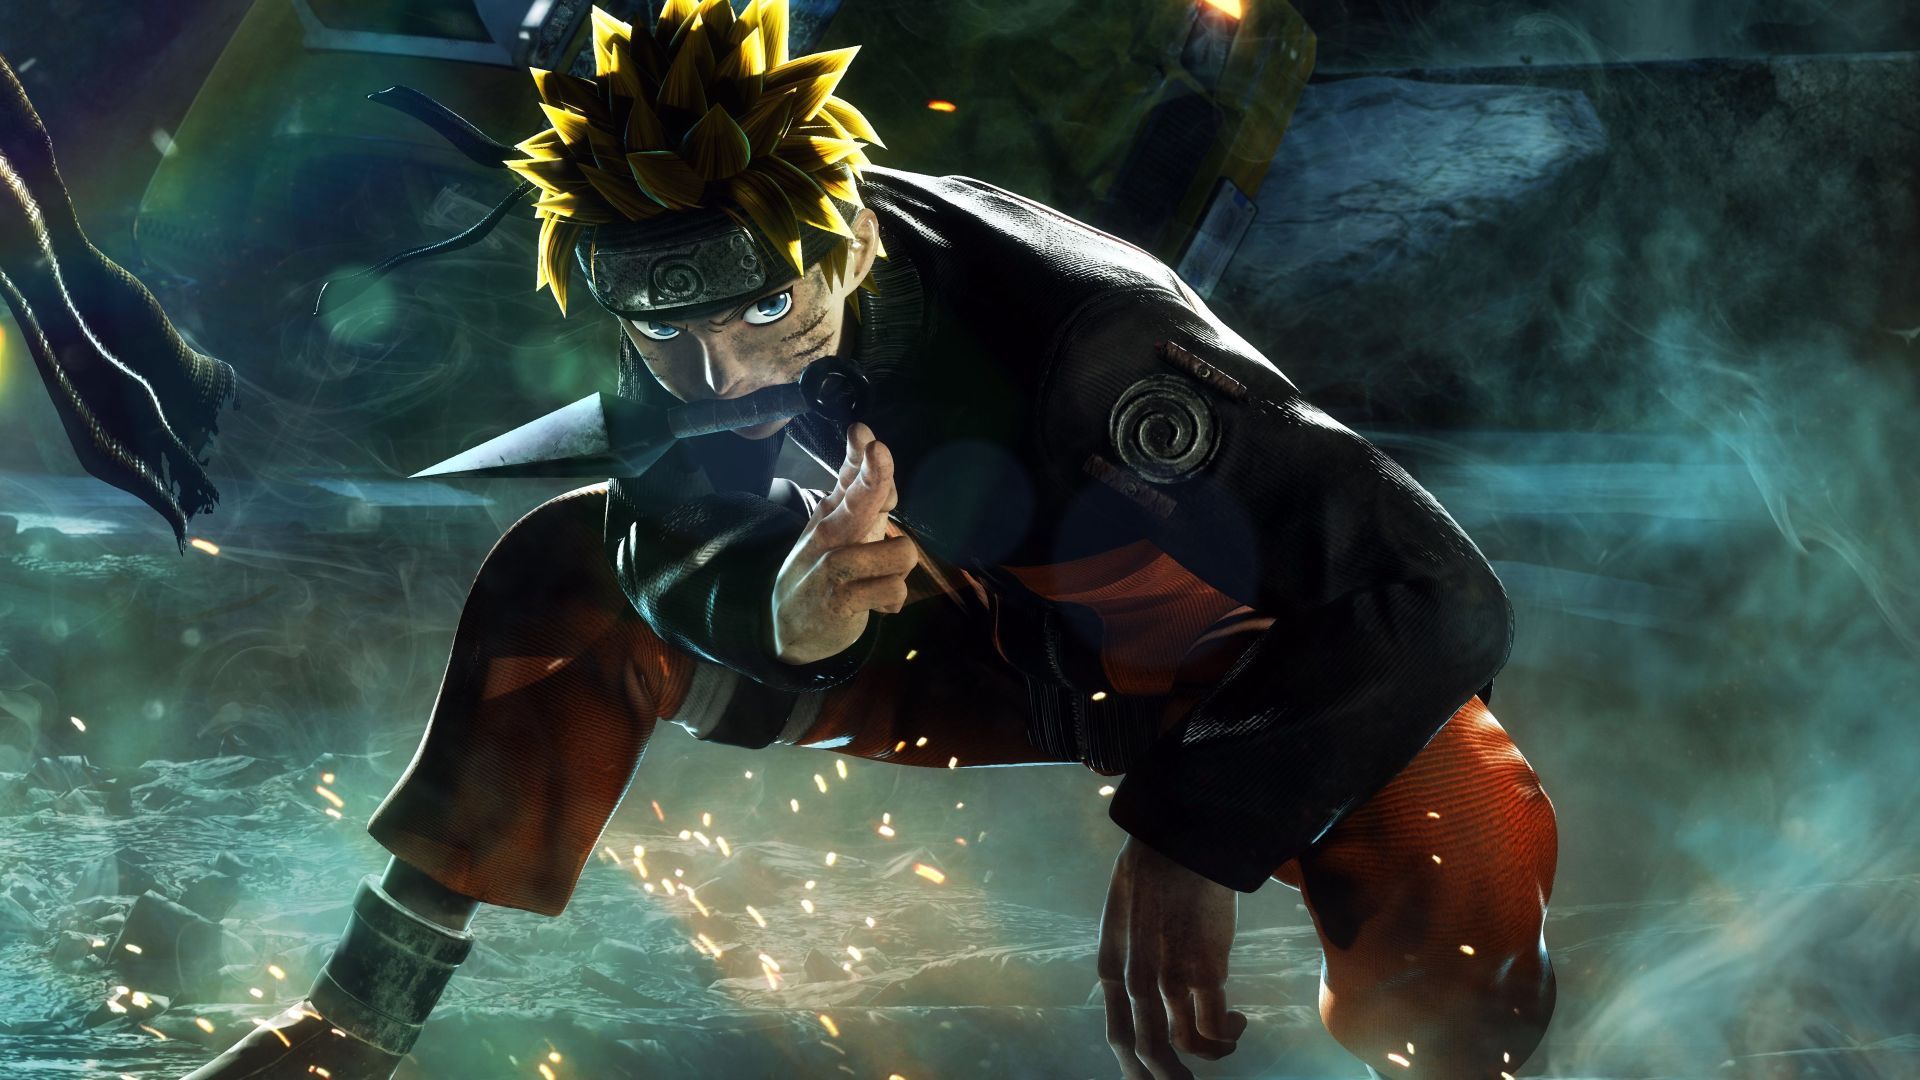 Naruto background: Nếu bạn đang tìm kiếm một bức hình nền Naruto để làm nền cho máy tính hoặc máy tính bảng của mình, hãy truy cập ngay vào Wallpaper Cave để tìm kiếm hình ảnh độc đáo và đẹp mắt của Naruto và những nhân vật phụ trong bộ truyện tranh nổi tiếng này. 